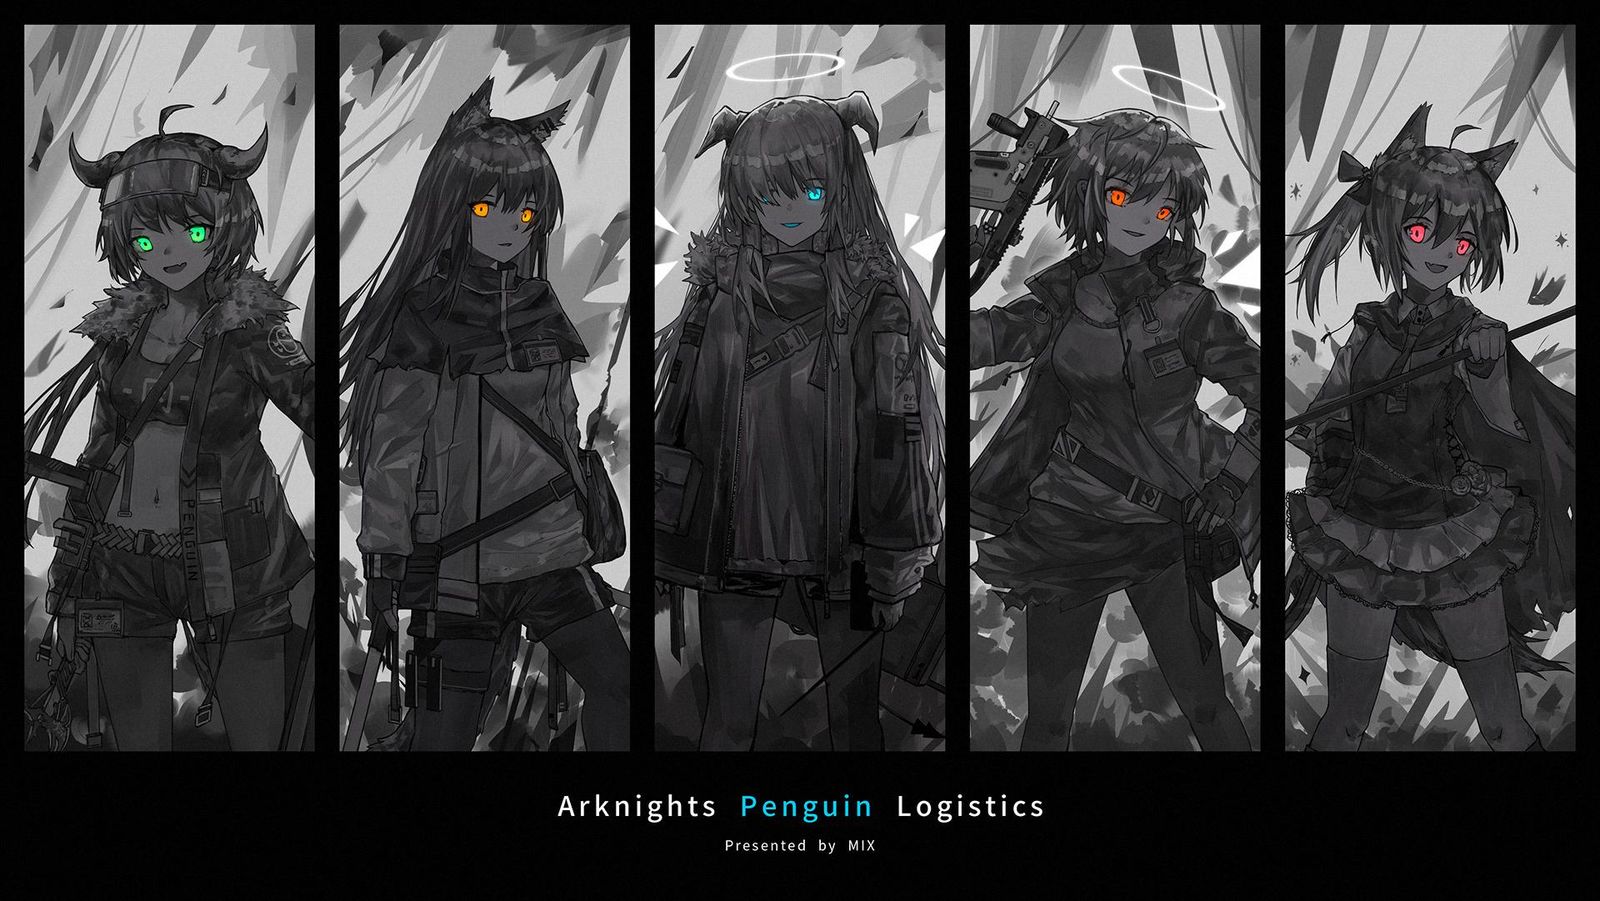 Penguin Logistics